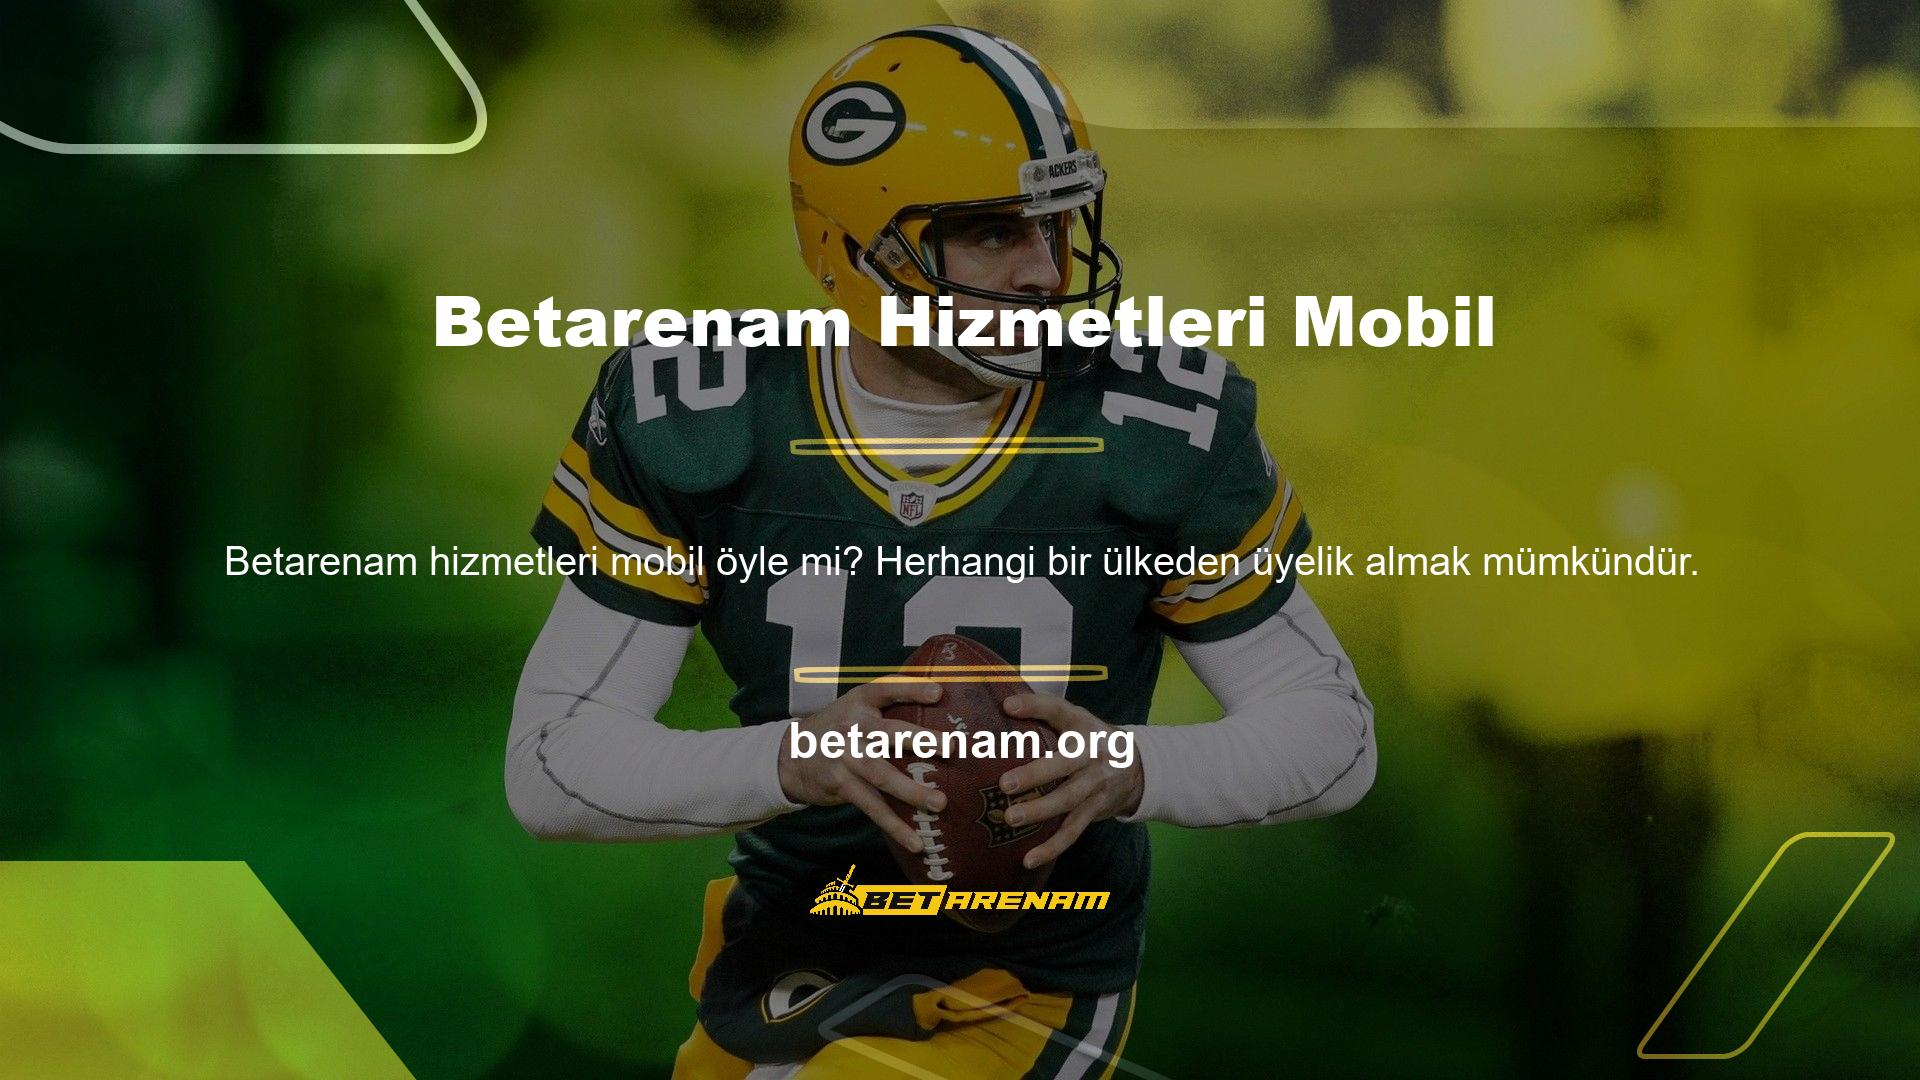 Avrupa'da Betarenam adında bir mobil web sitesi faaliyet göstermektedir